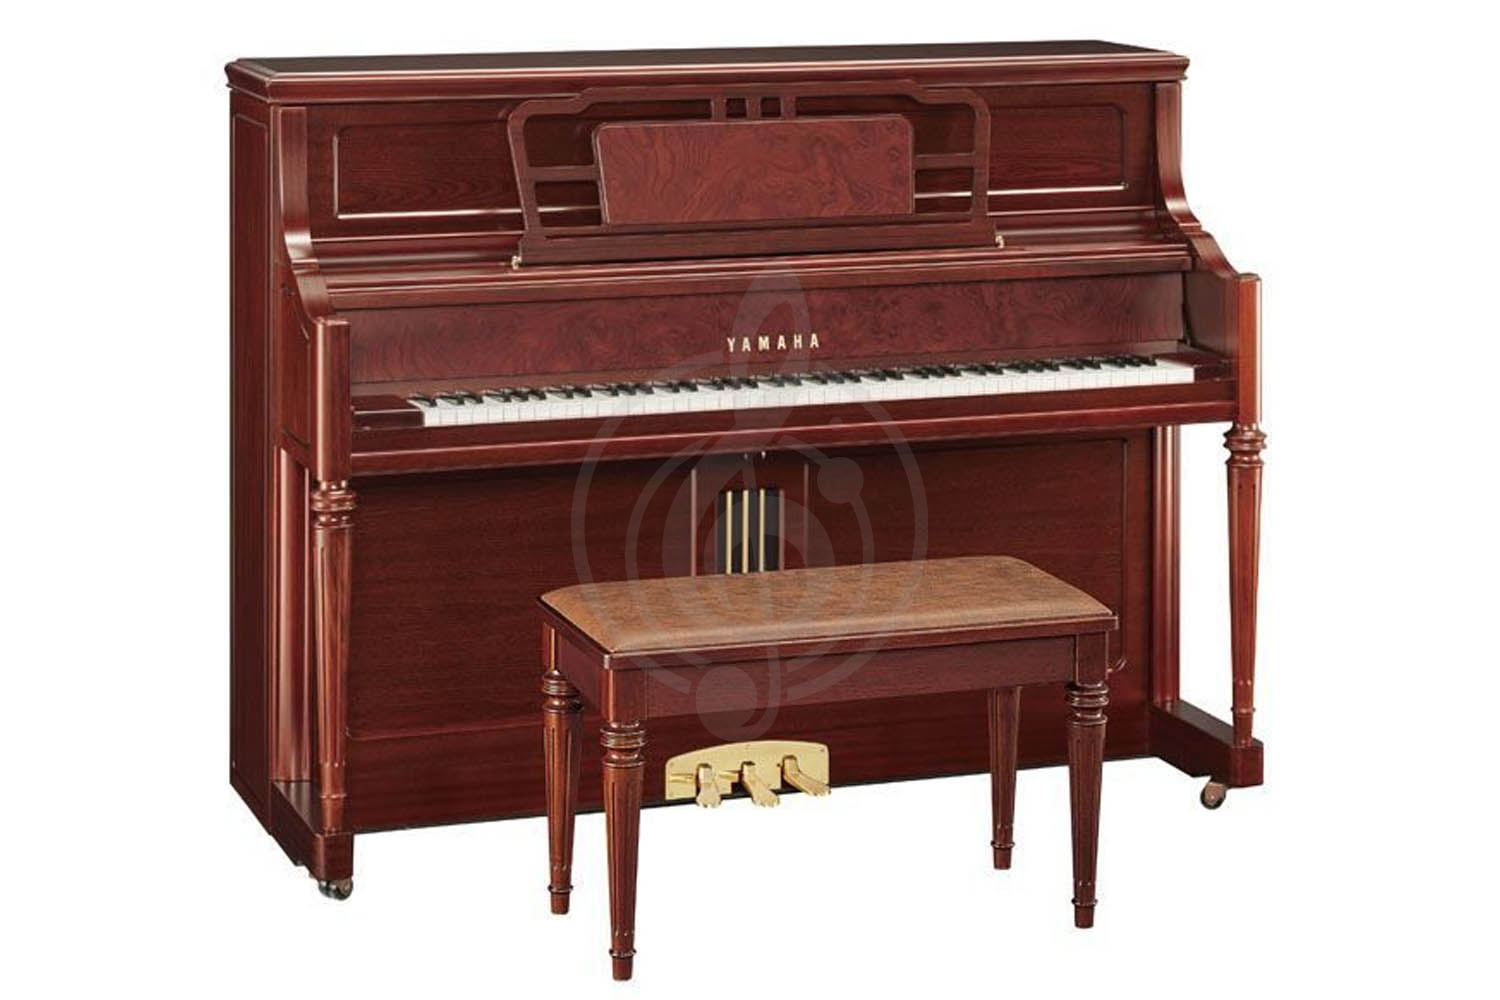 Акустическое пианино Пианино Yamaha Yamaha M3SDW - пианино 118см, темный орех сатинированное, с банкеткой M3 SDW//LZ.WITH BENCH - фото 1